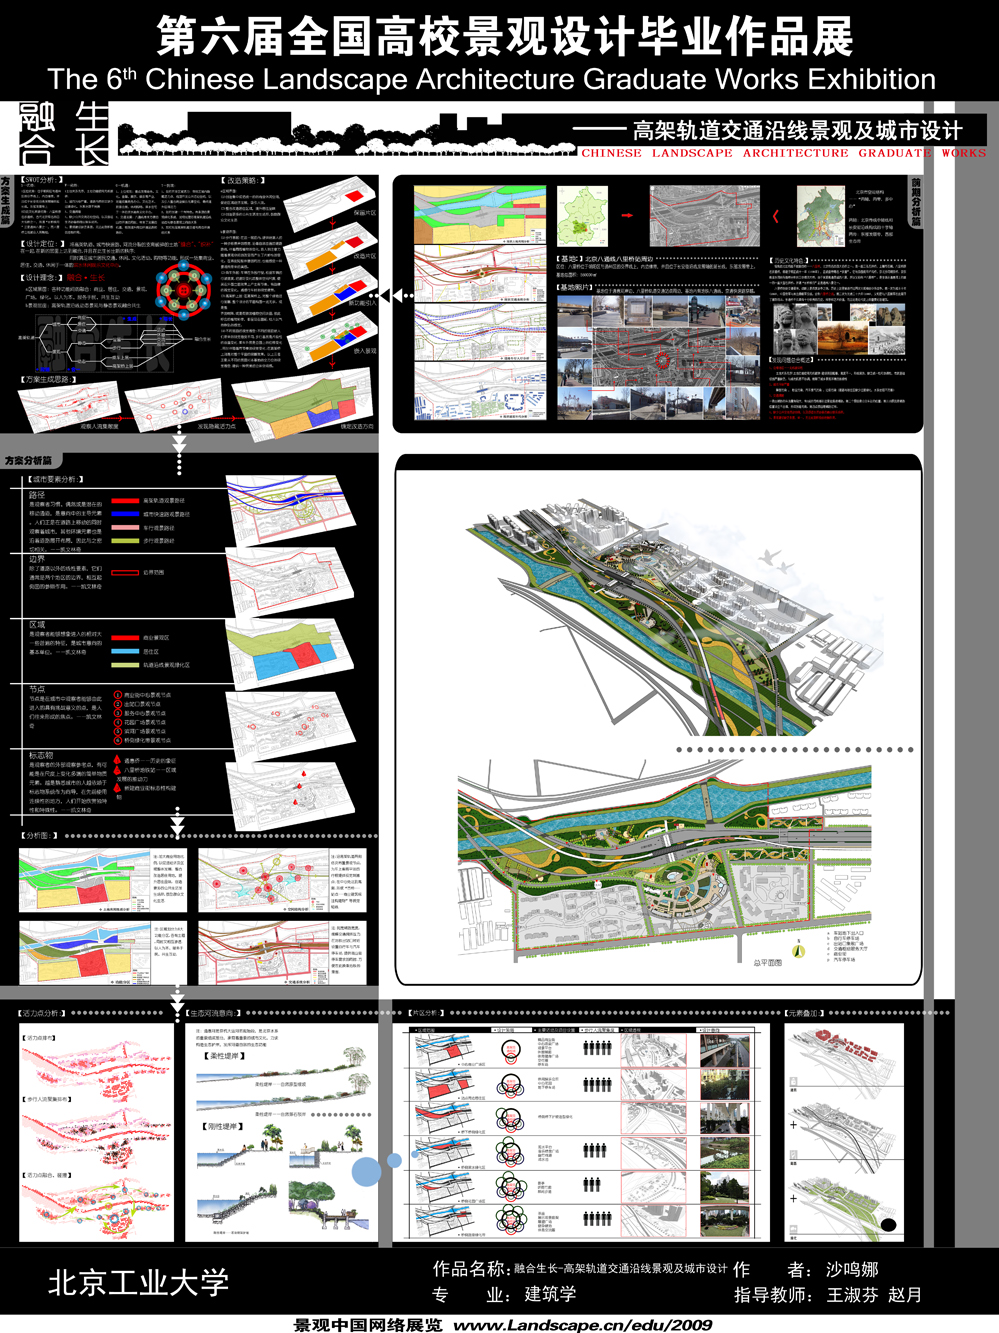 融合生长-高架轨道交通沿线景观及城市设计-1